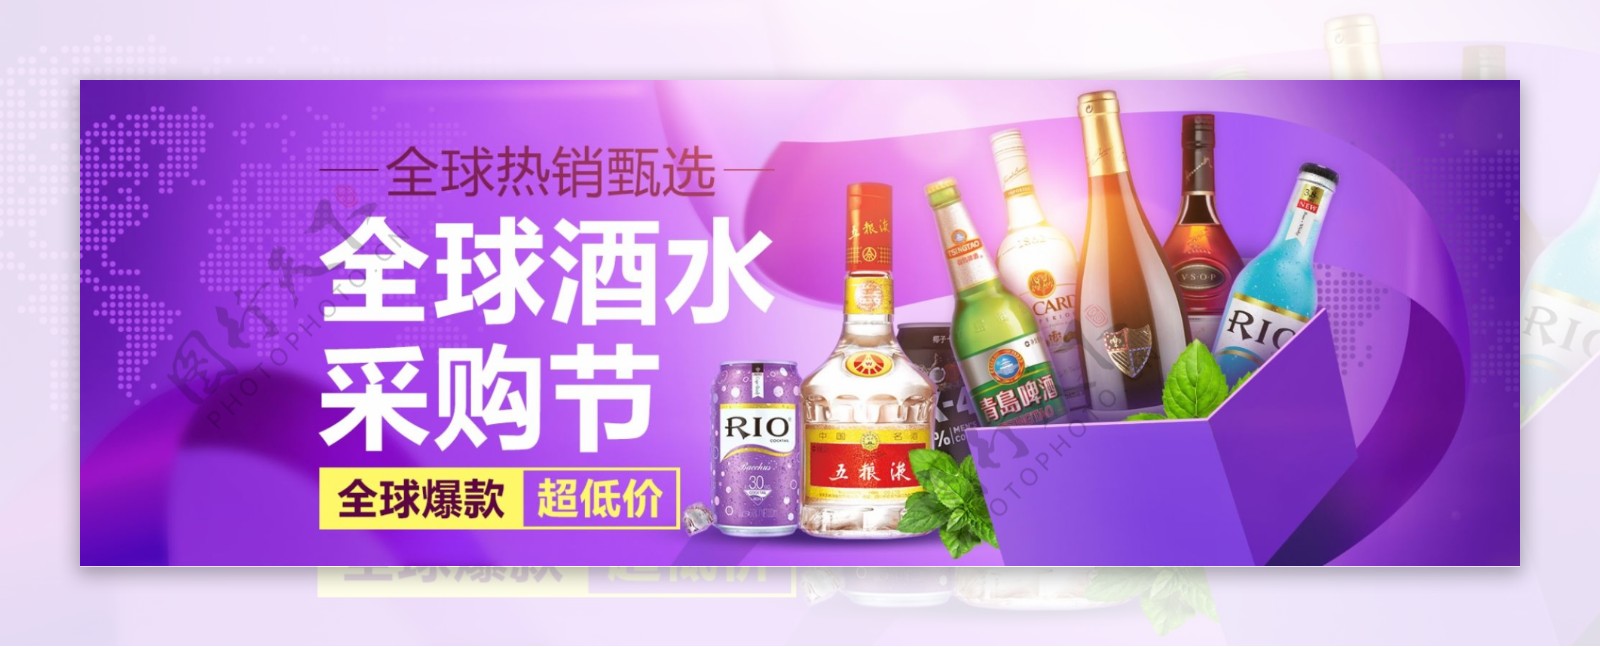 全球酒水采购节天猫淘宝电商促销海报紫色banner模板设计